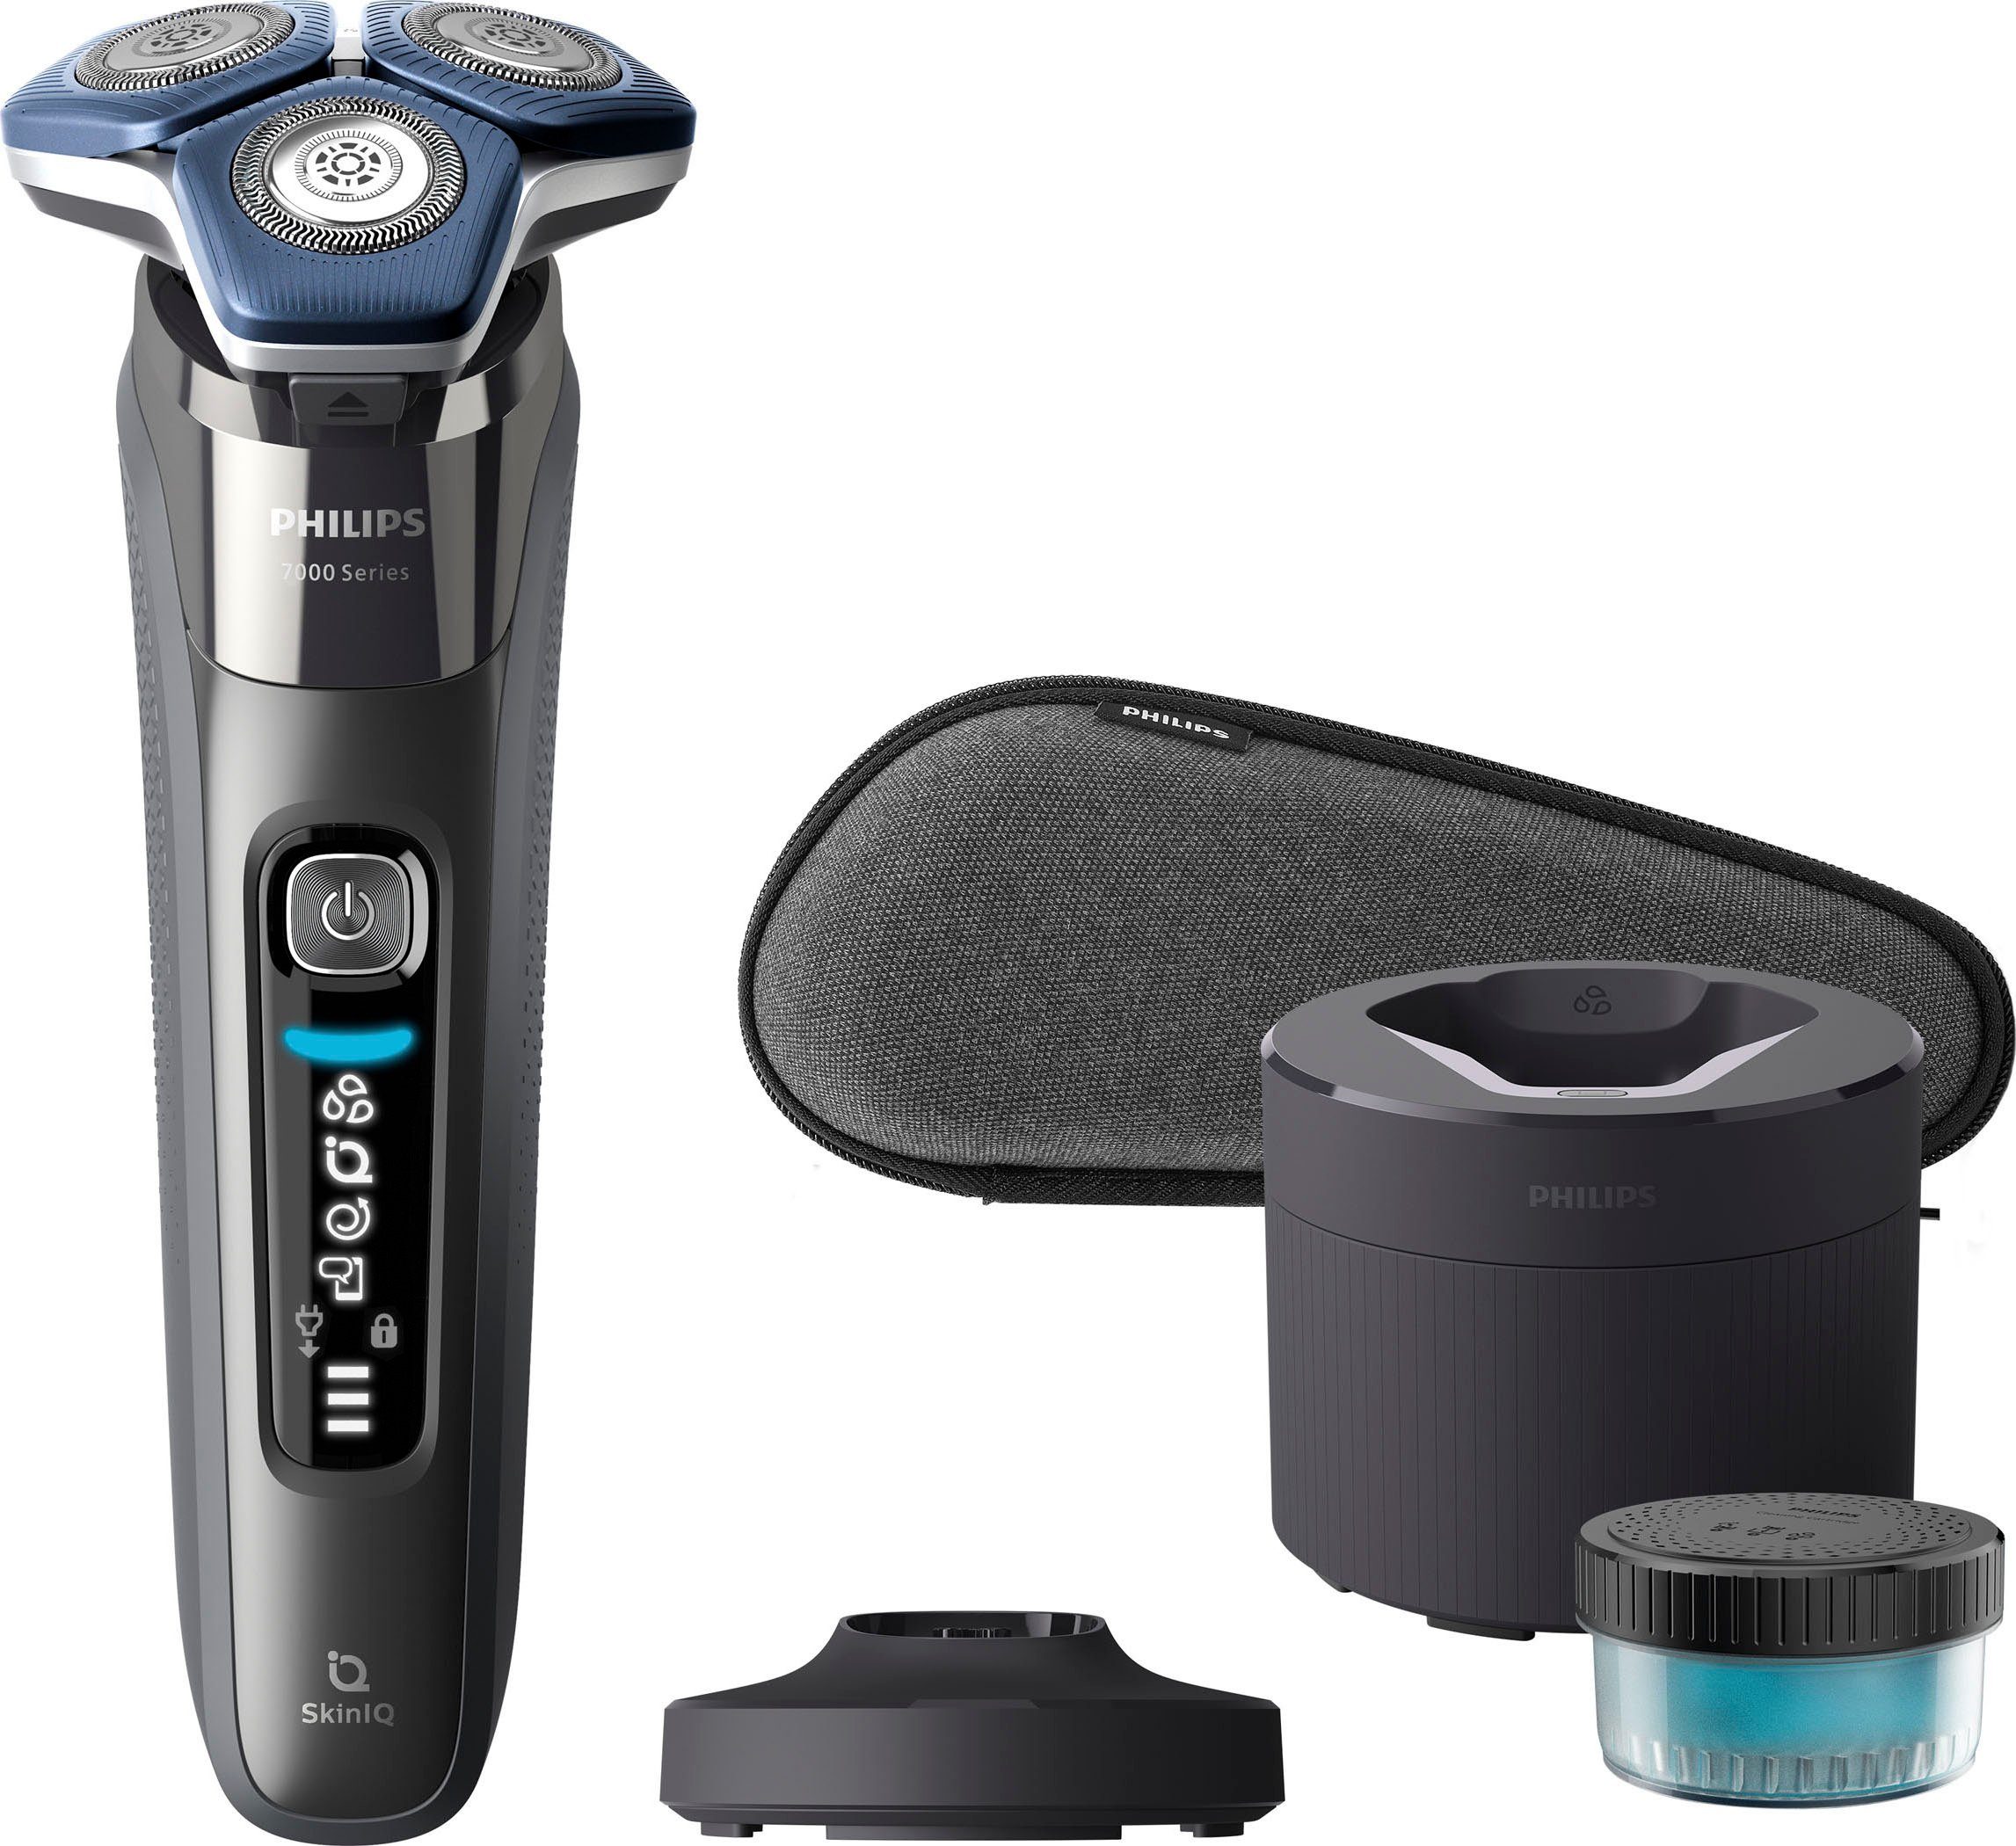 Philips Elektrorasierer Shaver Series Etui, 7000 1 Präzisionstrimmer, mit SkinIQ Reinigungskartusche, Technologie Reinigungsstation, S7887/55, ausklappbarer Ladestand